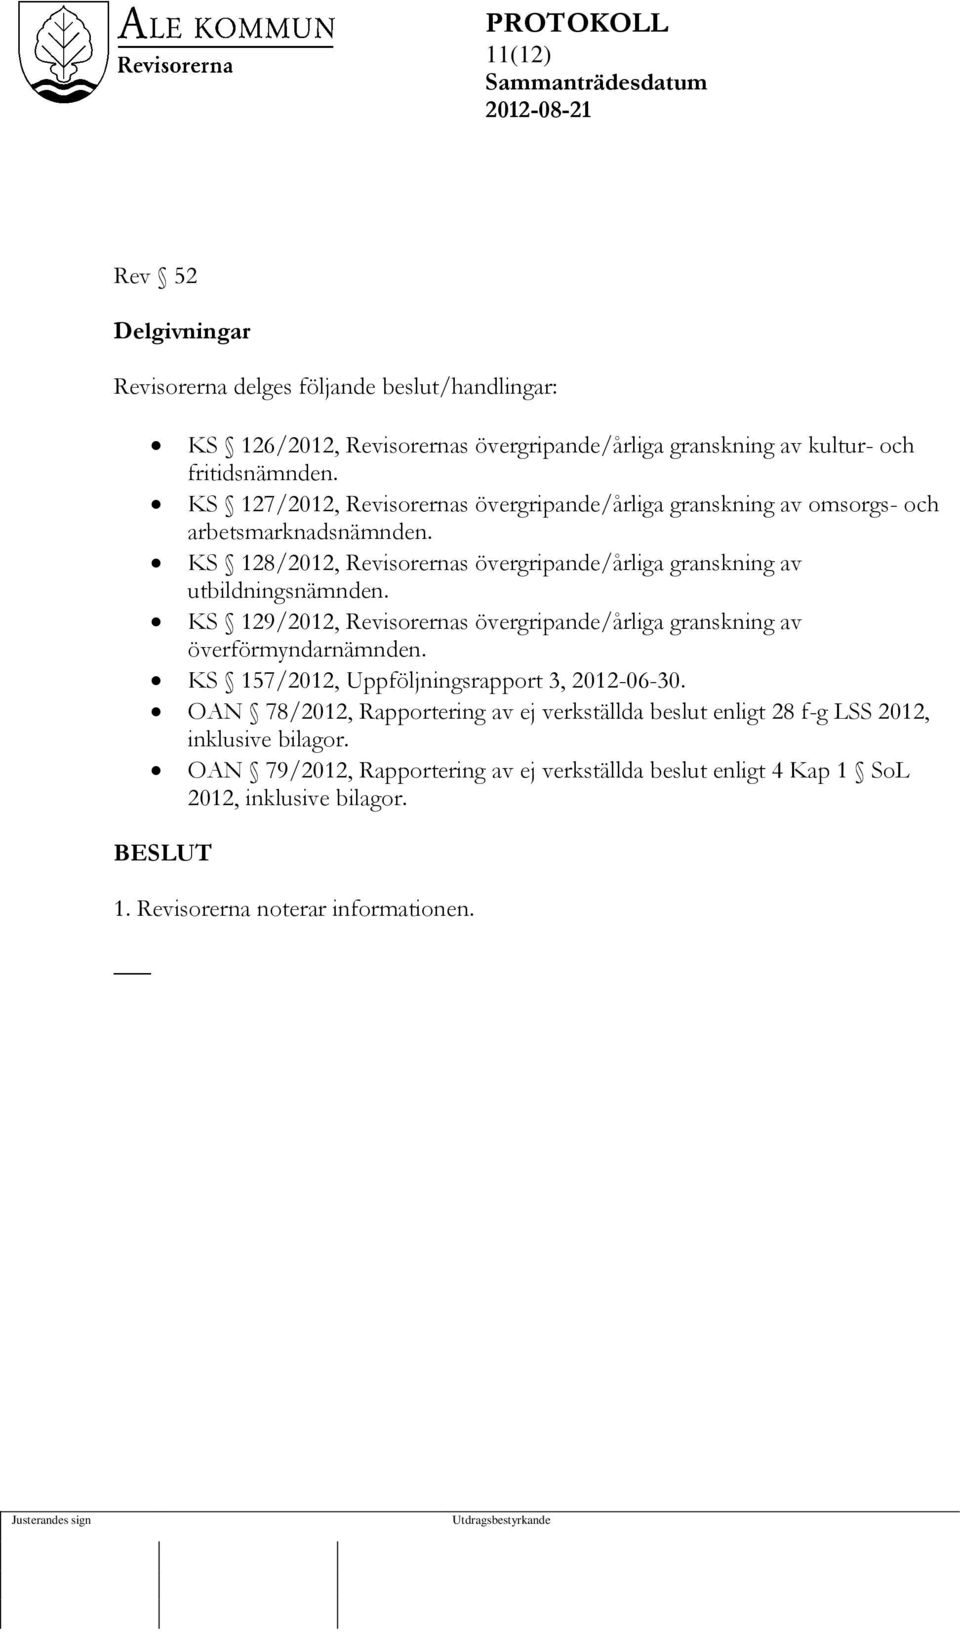 KS 129/2012, Revisorernas övergripande/årliga granskning av överförmyndarnämnden. KS 157/2012, Uppföljningsrapport 3, 2012-06-30.